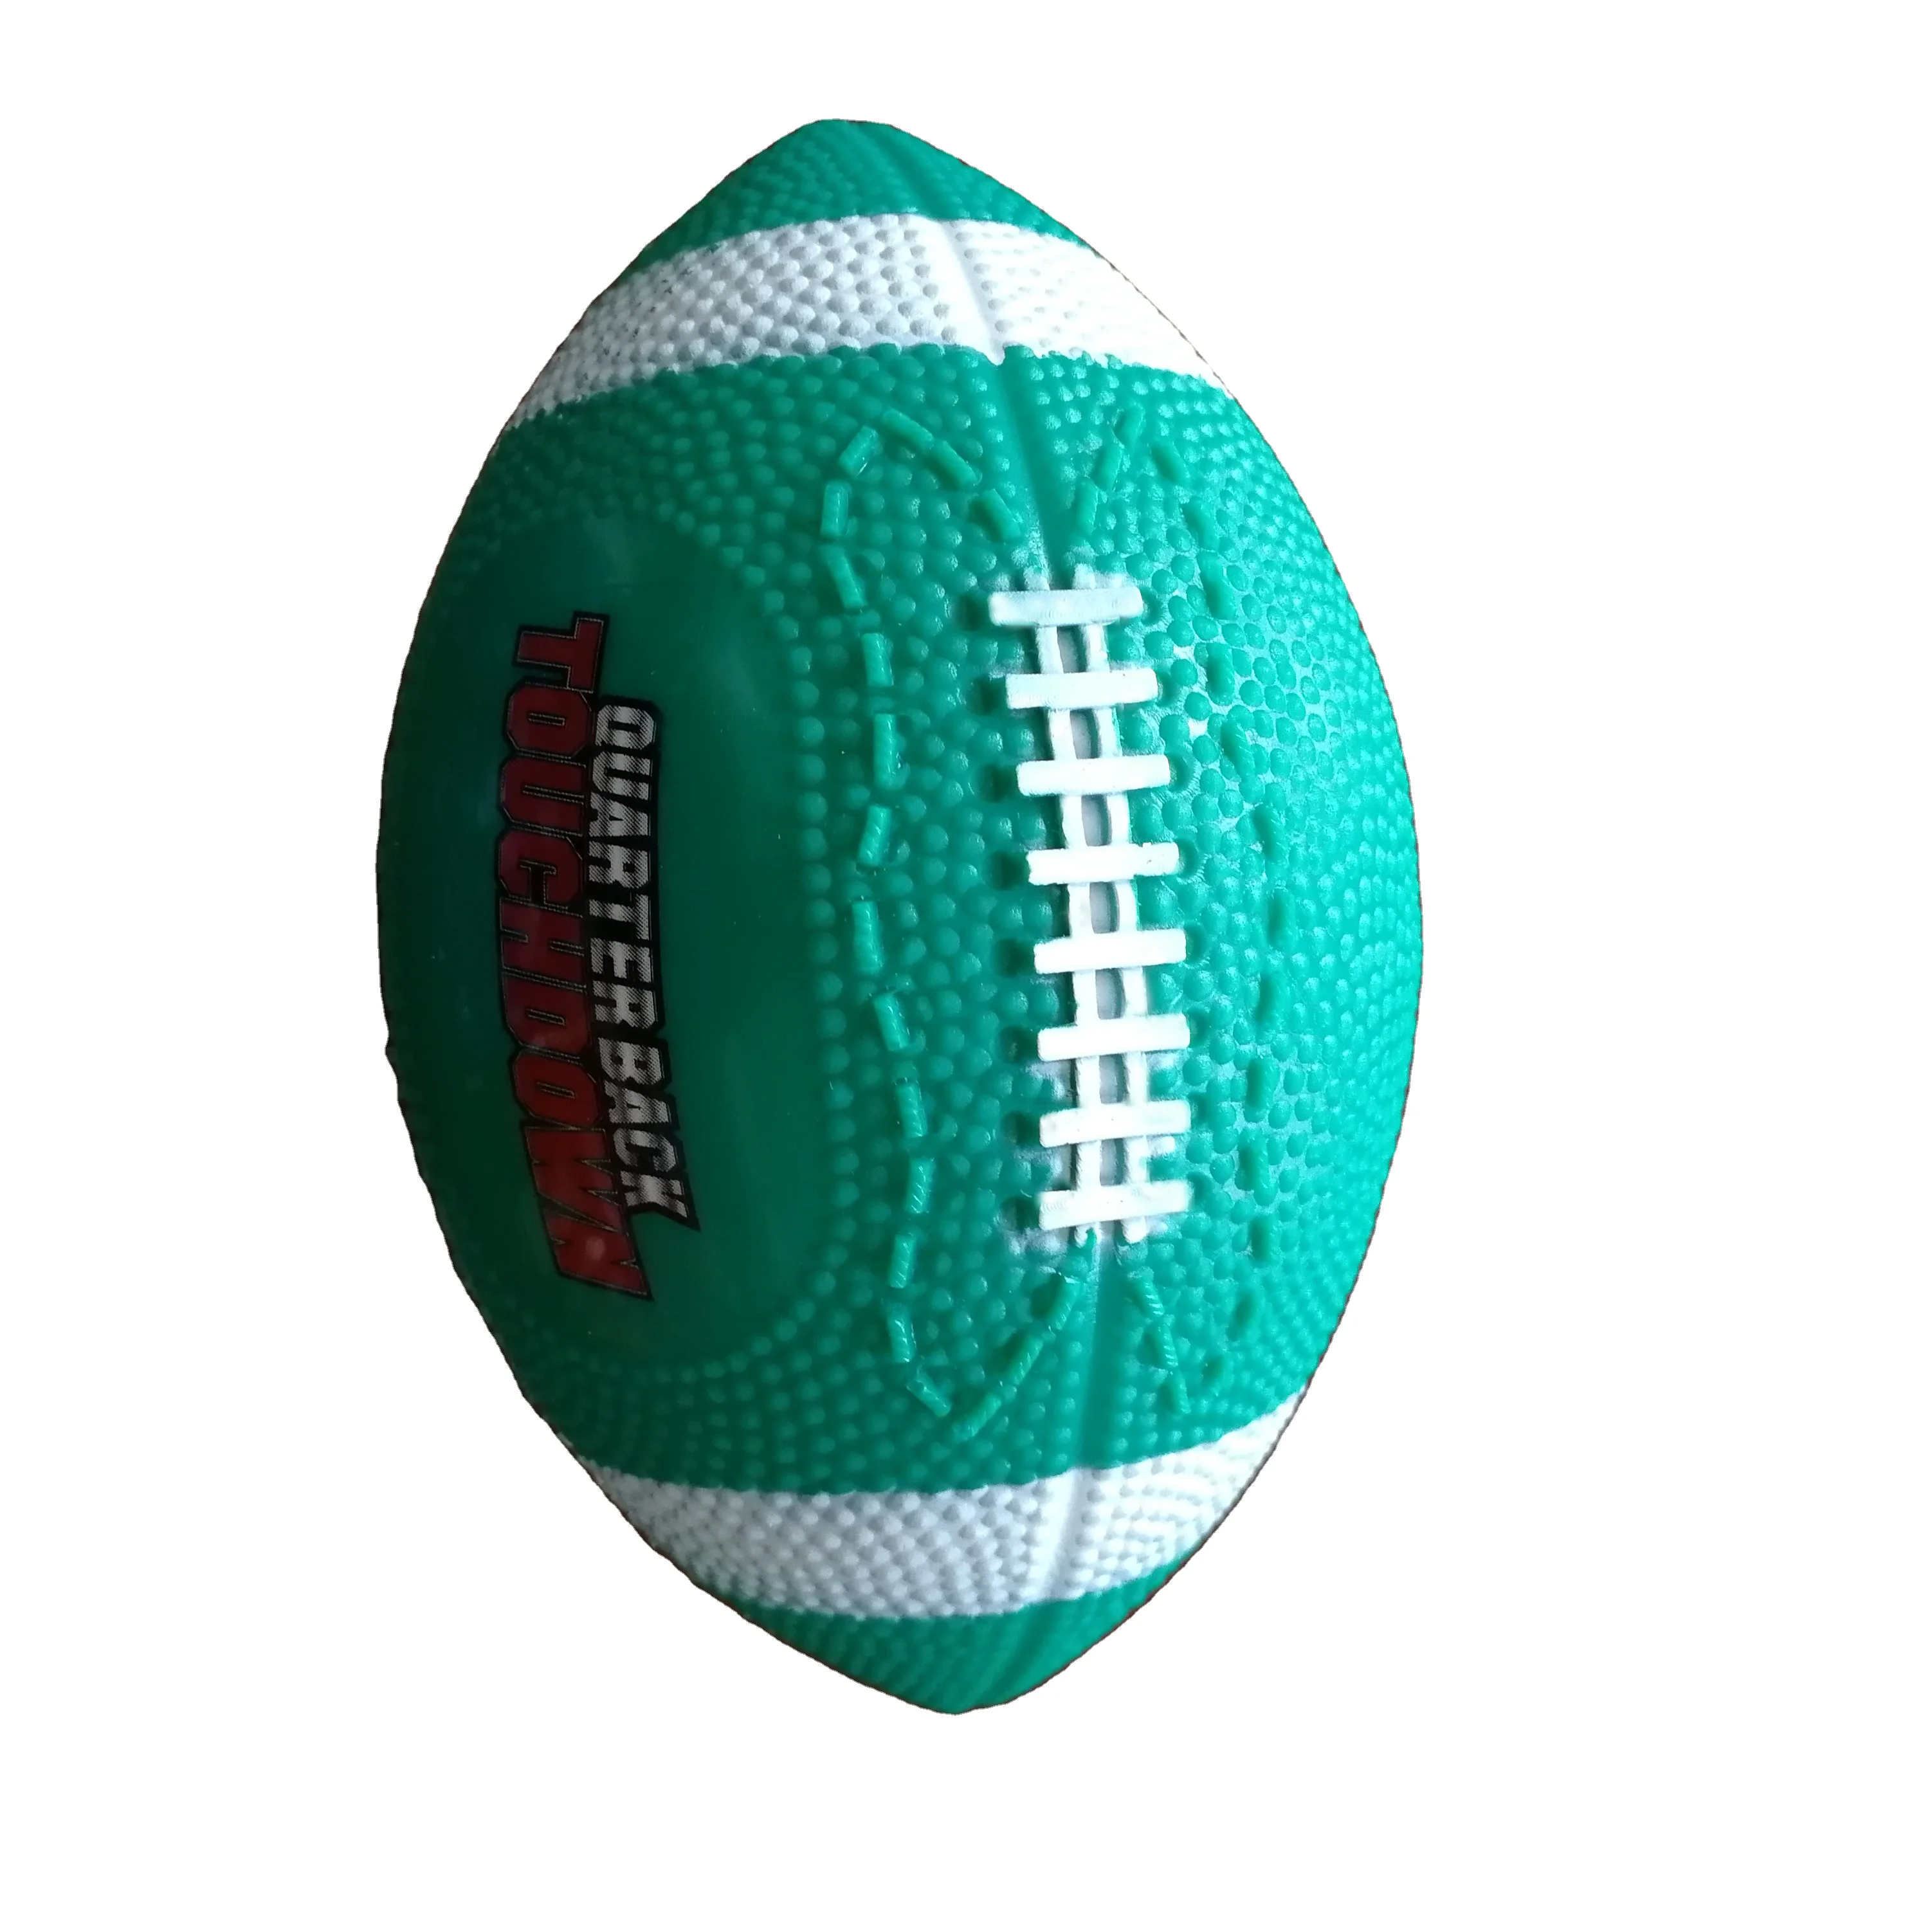 High Quality格安価格ラグビーボールミニ15 8センチメートルアメリカンフットボールボール Buy カスタムアメリカンフットボール インフレータブルアメリカンフットボール 販売アメリカンフットボール Product On Alibaba Com